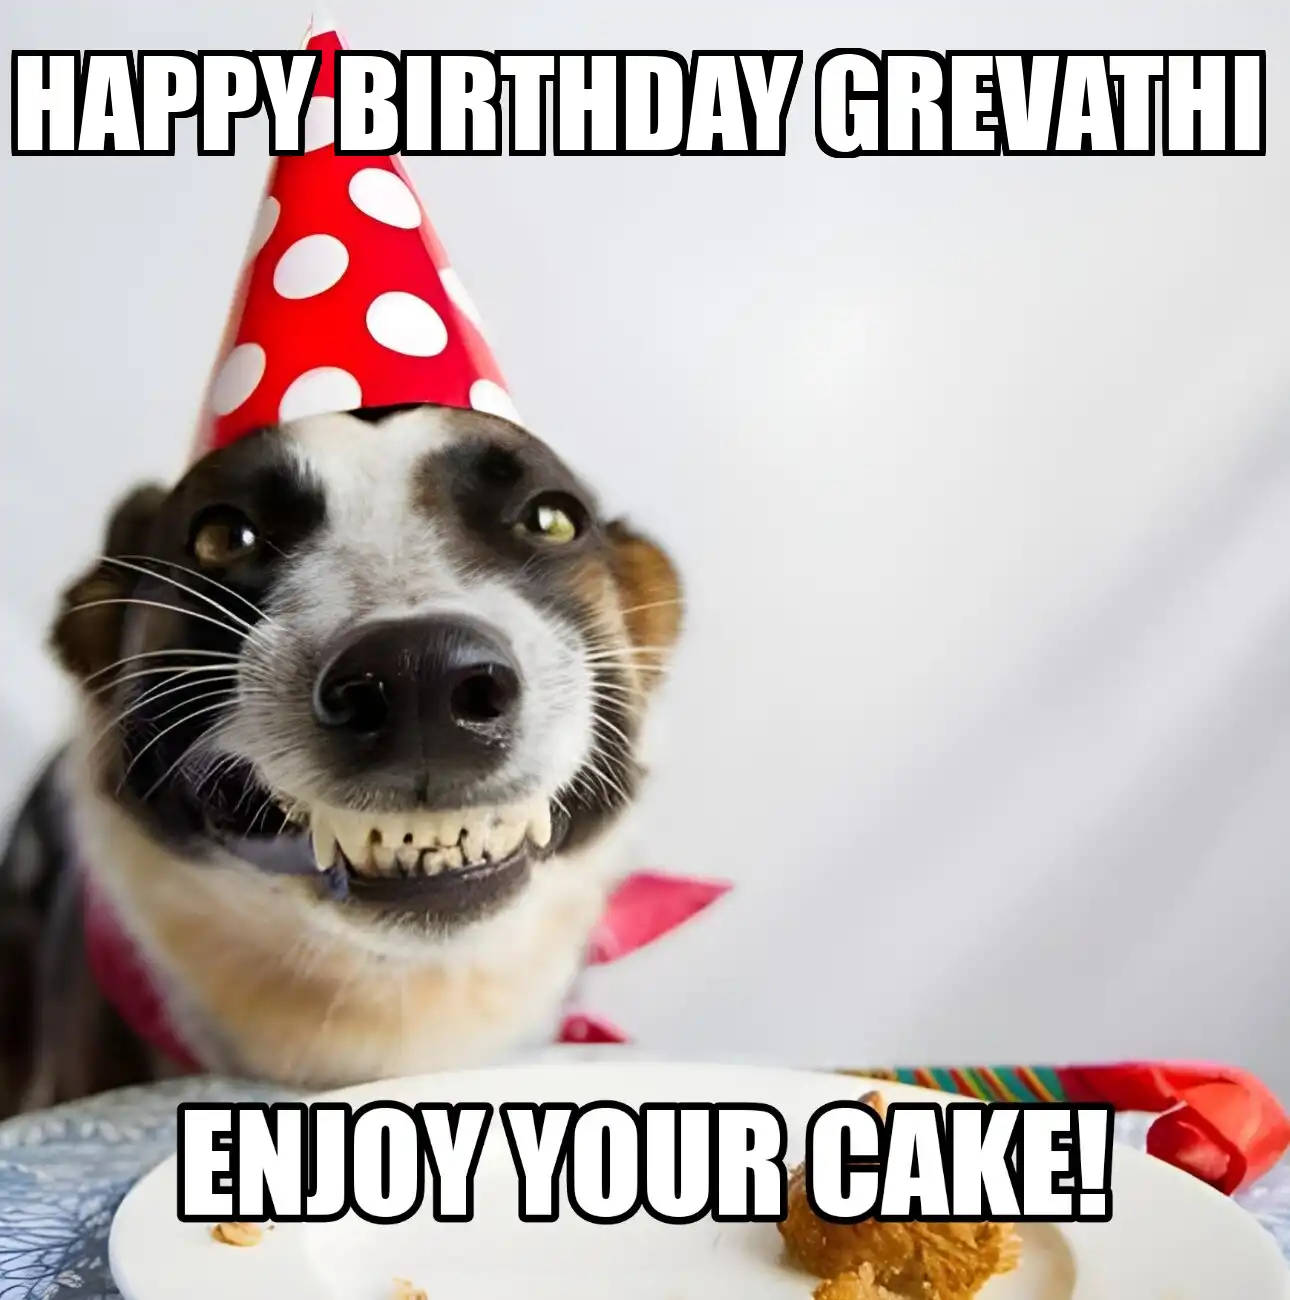 Happy Birthday Grevathi Enjoy Your Cake Dog Meme